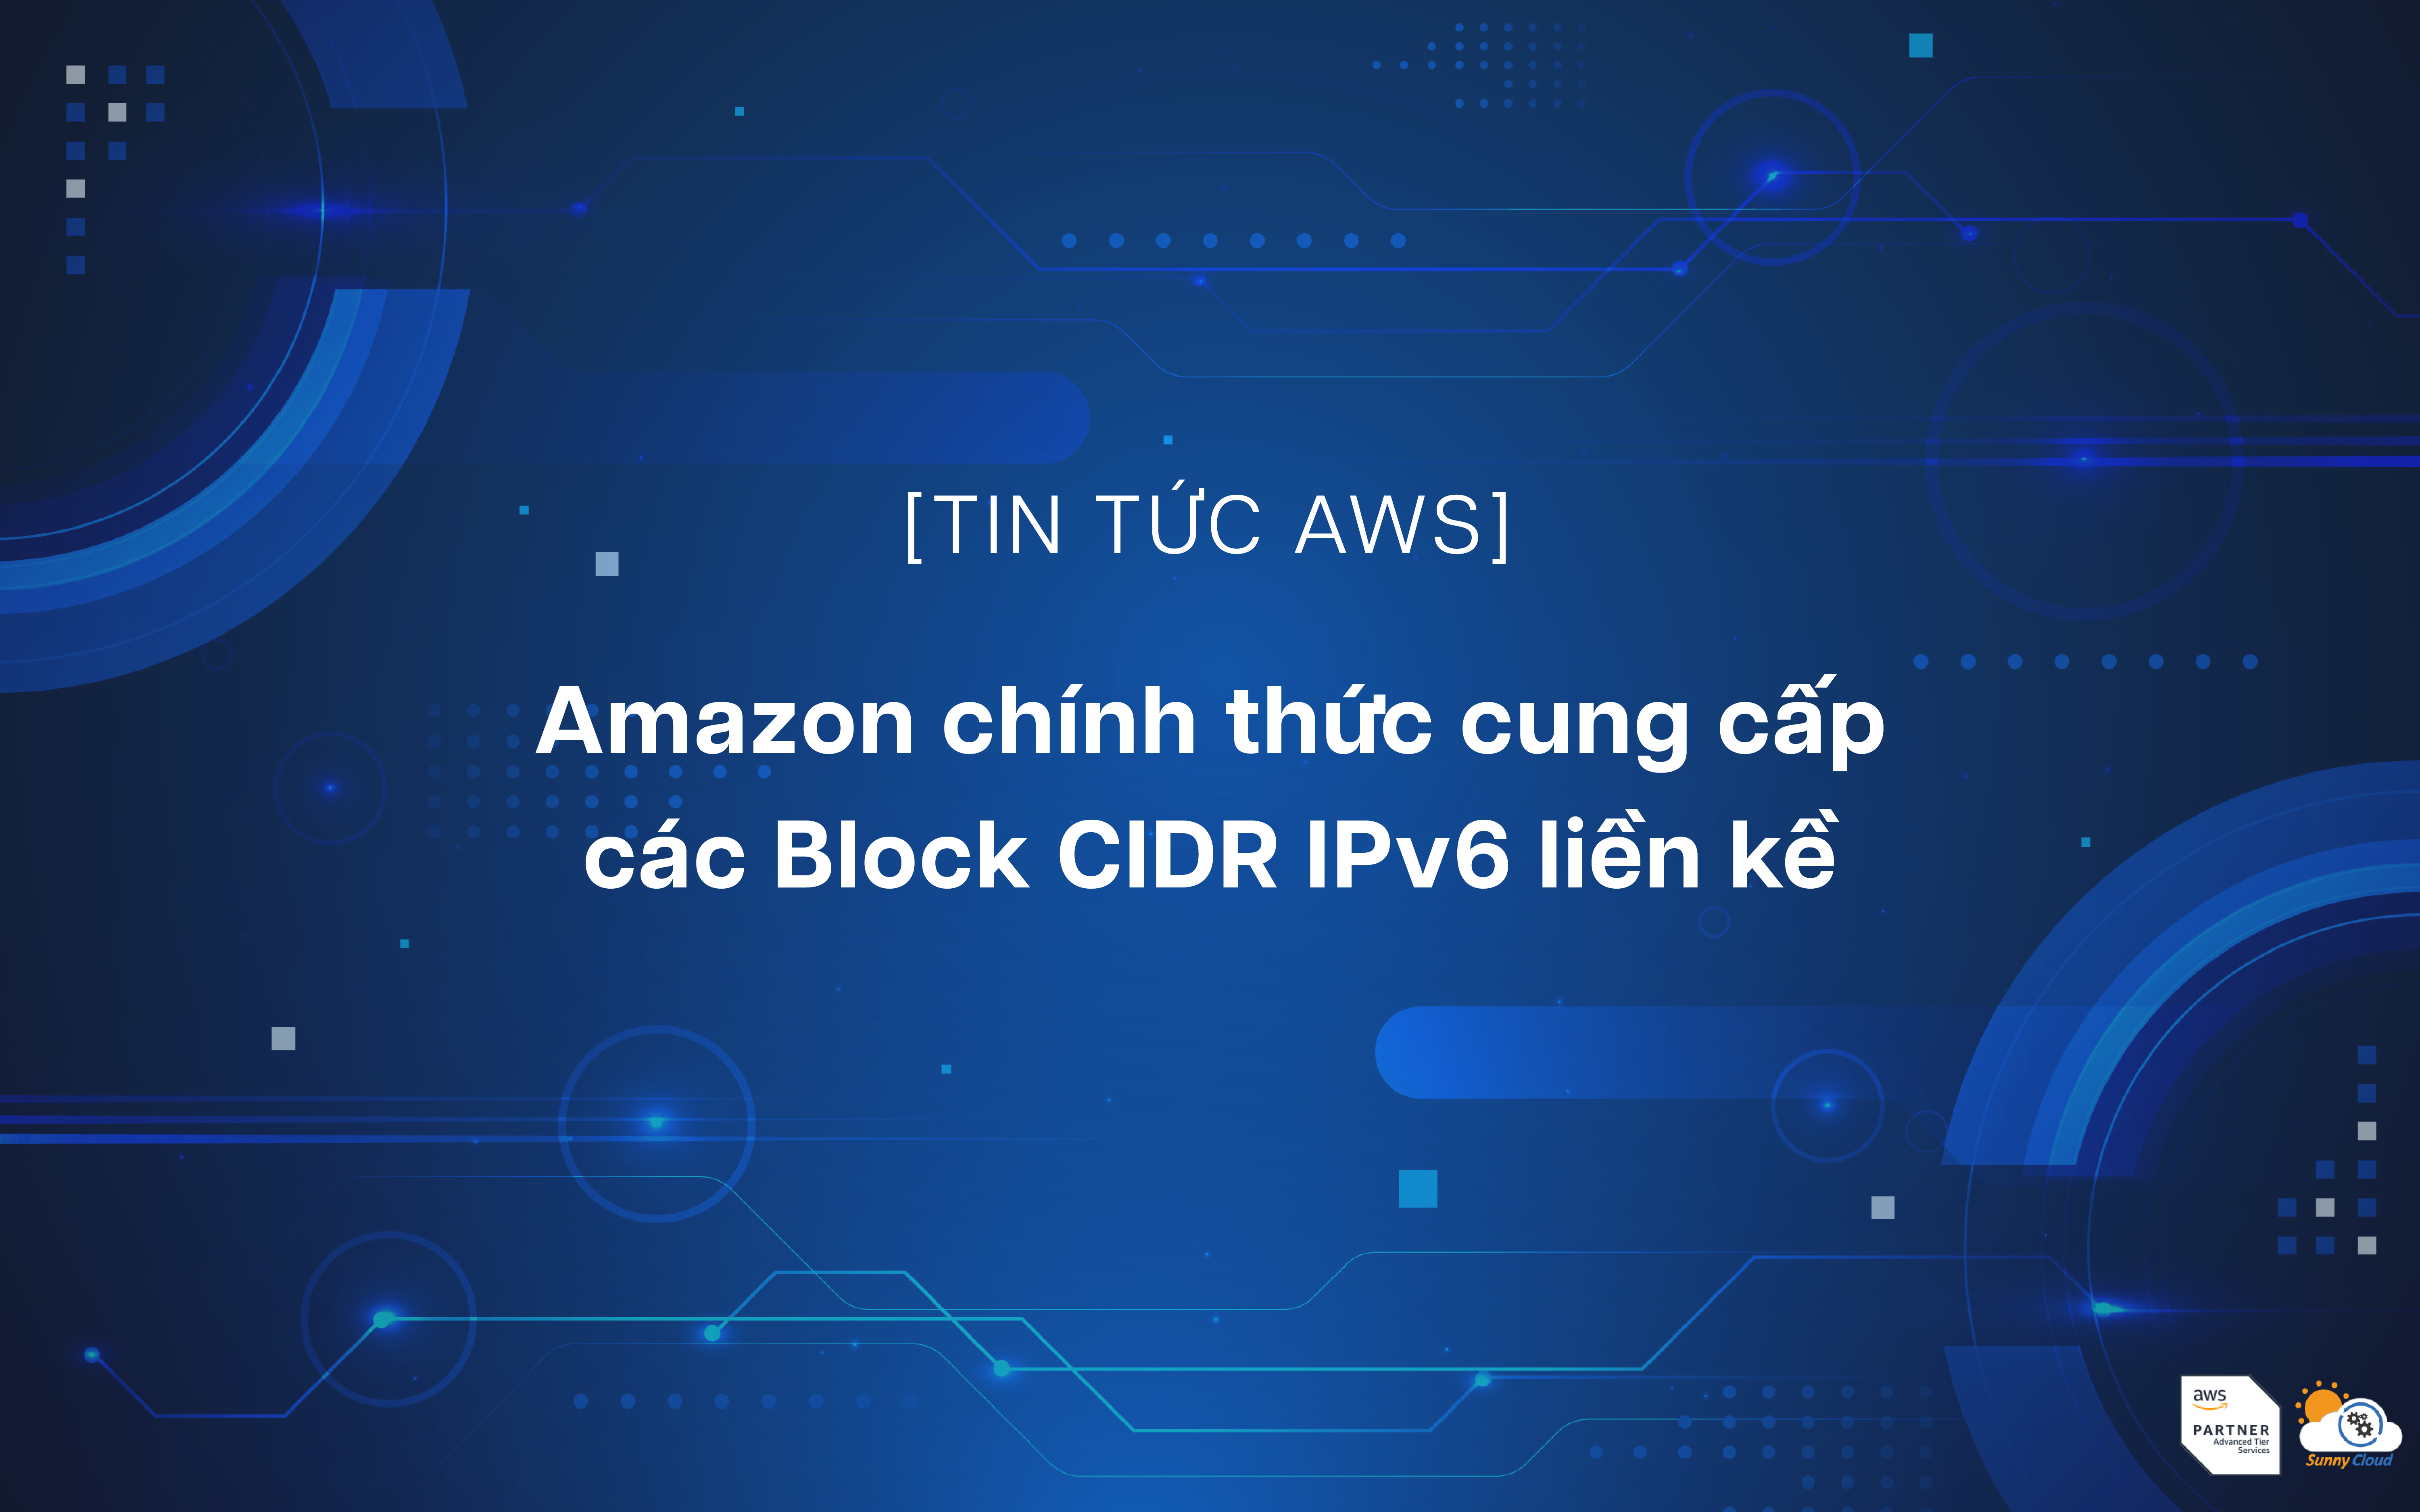 Amazon chính thức cung cấp các Block CIDR IPv6 liền kề